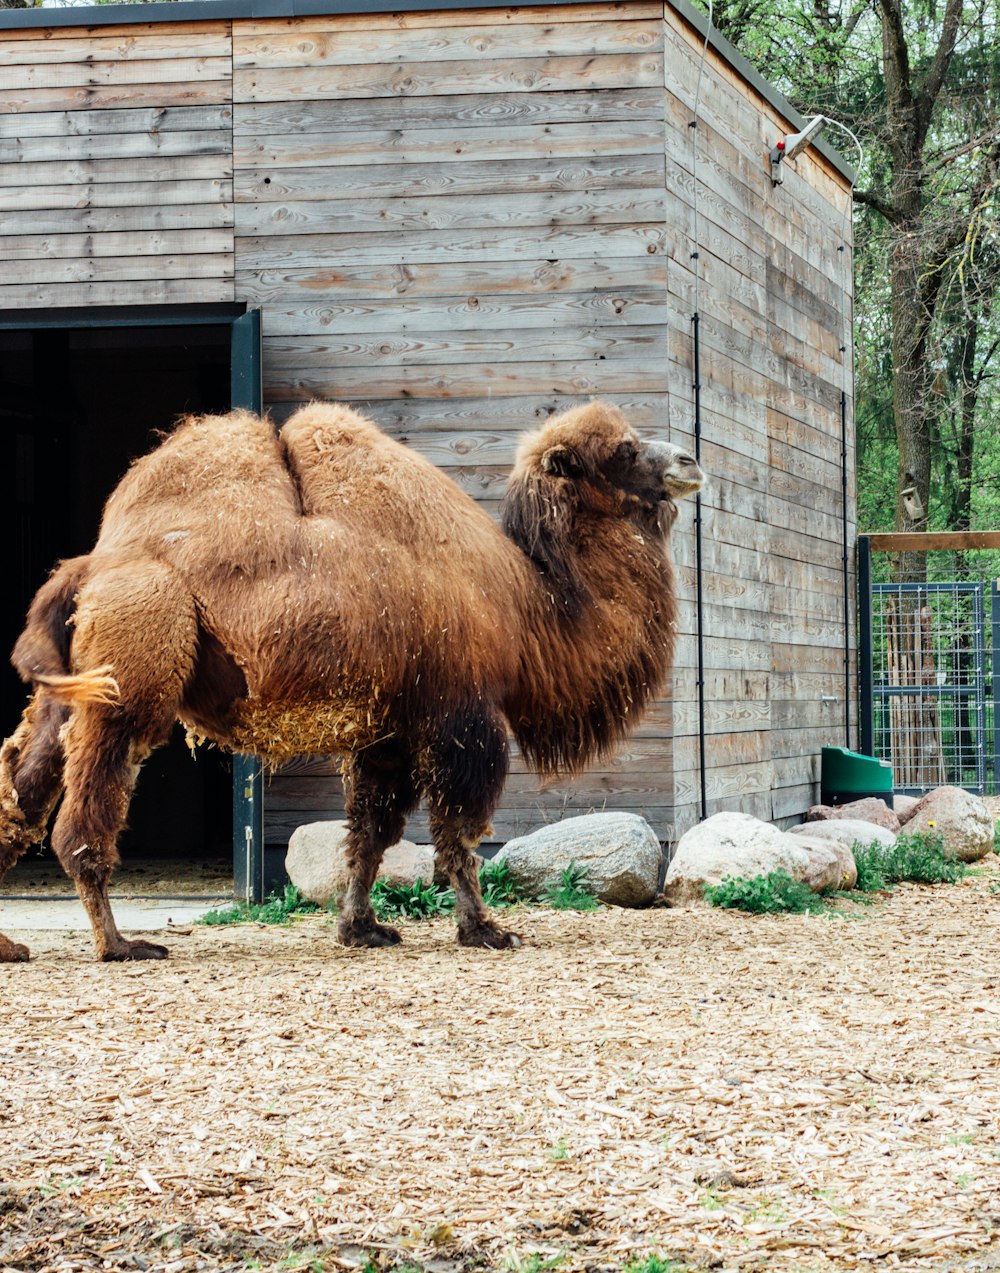 Un camello parado frente a un edificio de madera